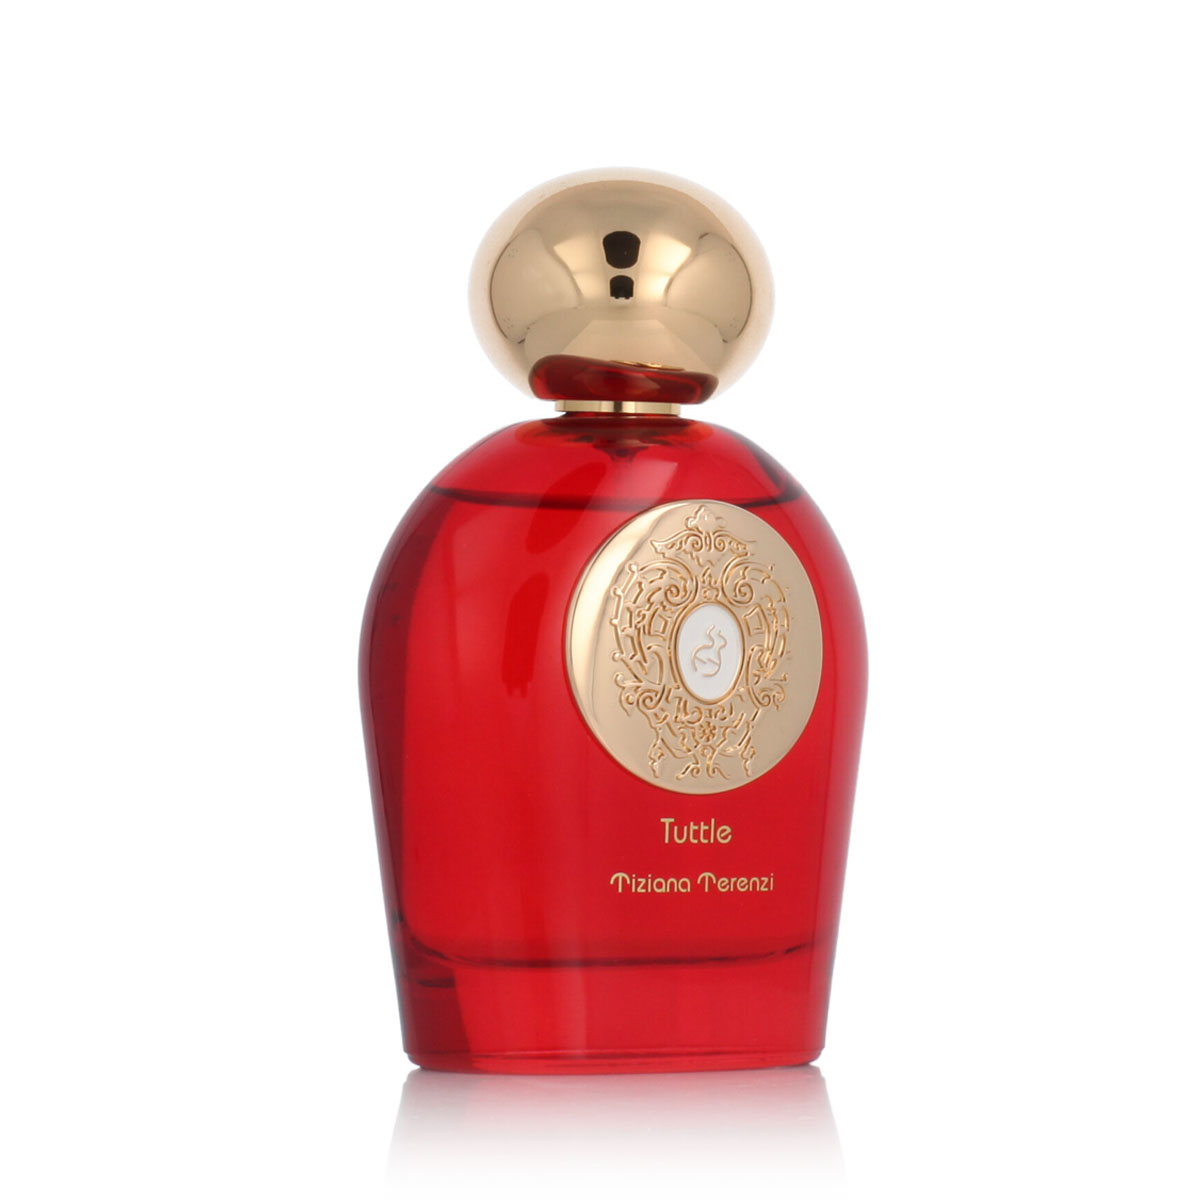 Tiziana Terenzi Tuttle 10 ml NIŠINIAI kvepalų mėginukas (atomaizeris) Unisex Parfum